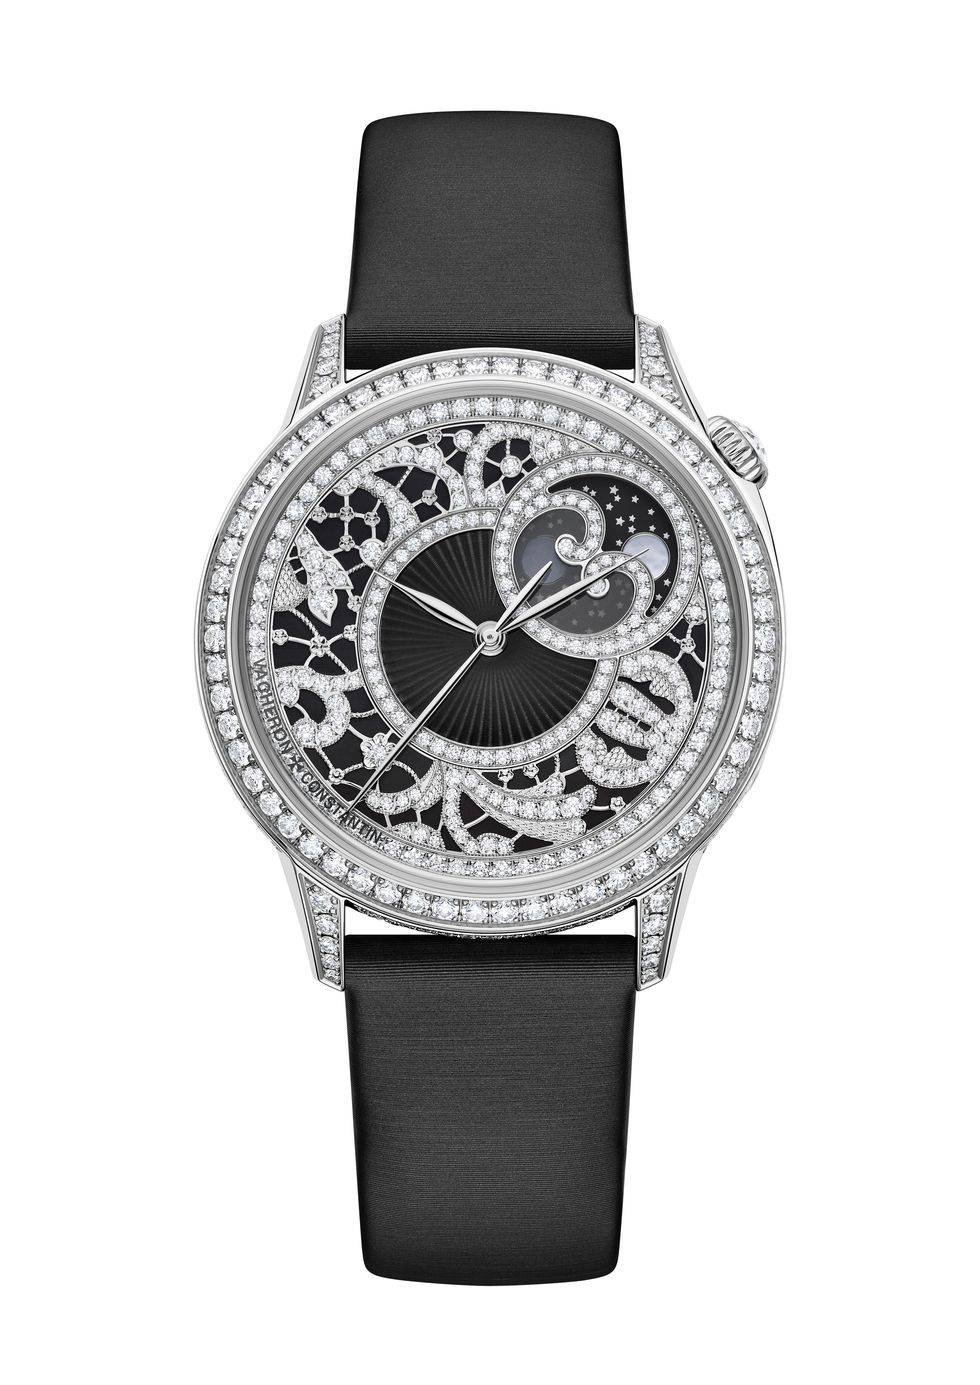 2023上半年腕錶展覽看點：江詩丹頓高級複雜女錶展、jacob  co機械錶、breguet陀飛輪等複雜腕錶一覽